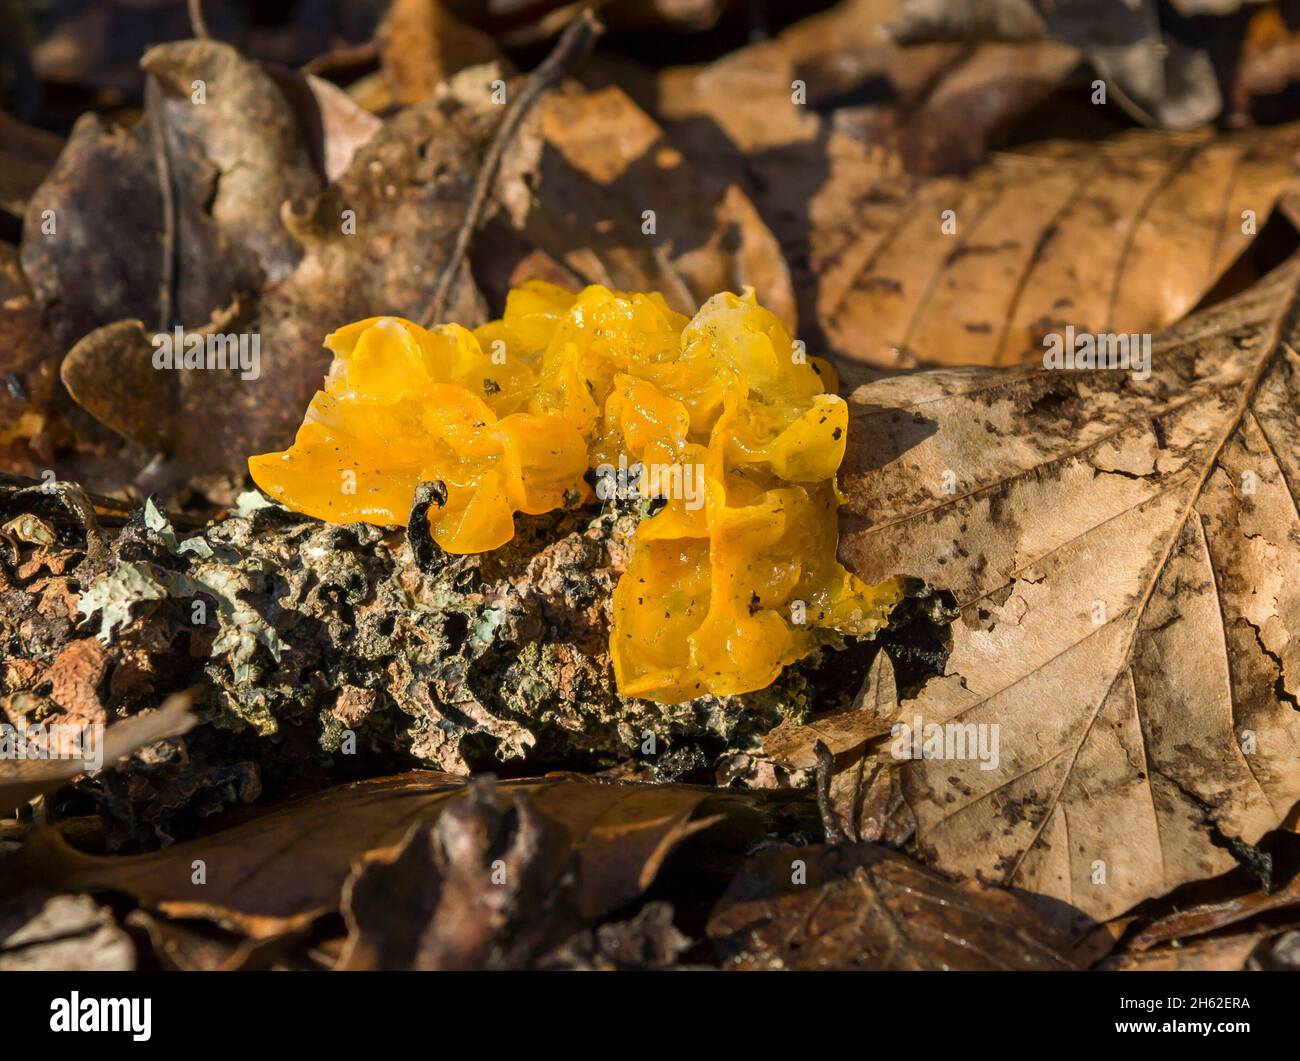 il giallo dorato tremante è un tipo di fungo della famiglia dei parenti tremanti. Foto Stock